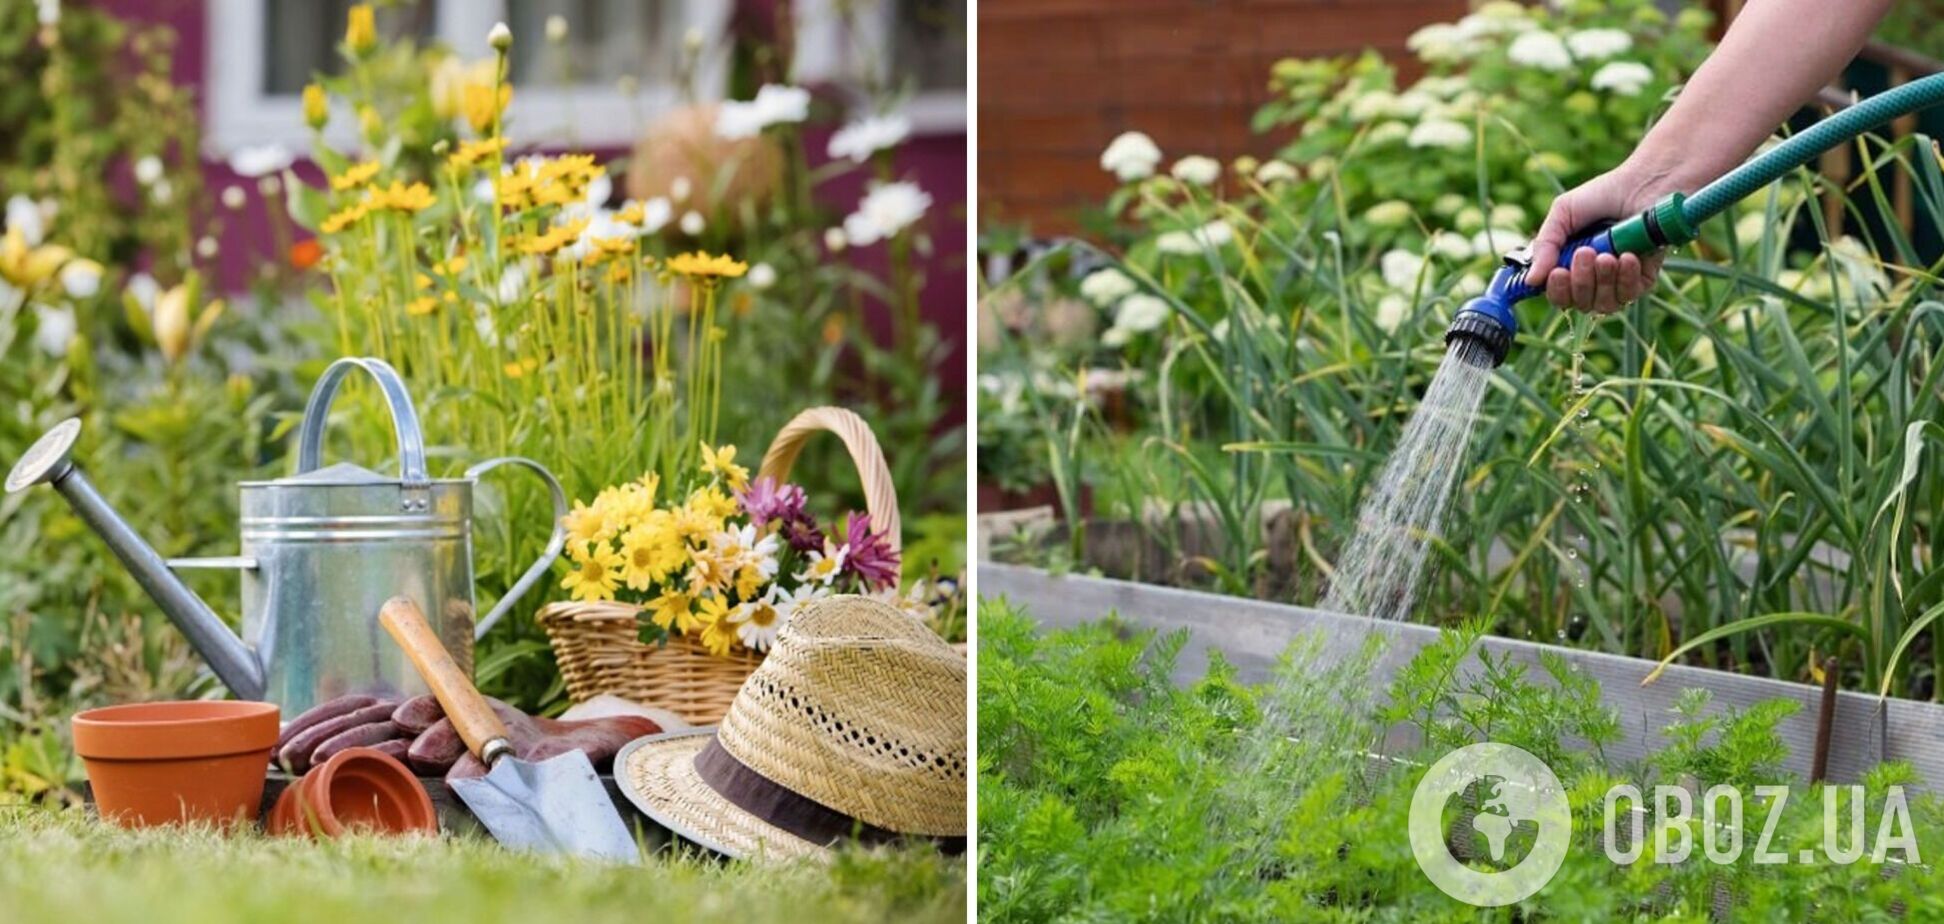 Коли і як часто треба поливати овочі на городі: головні правила